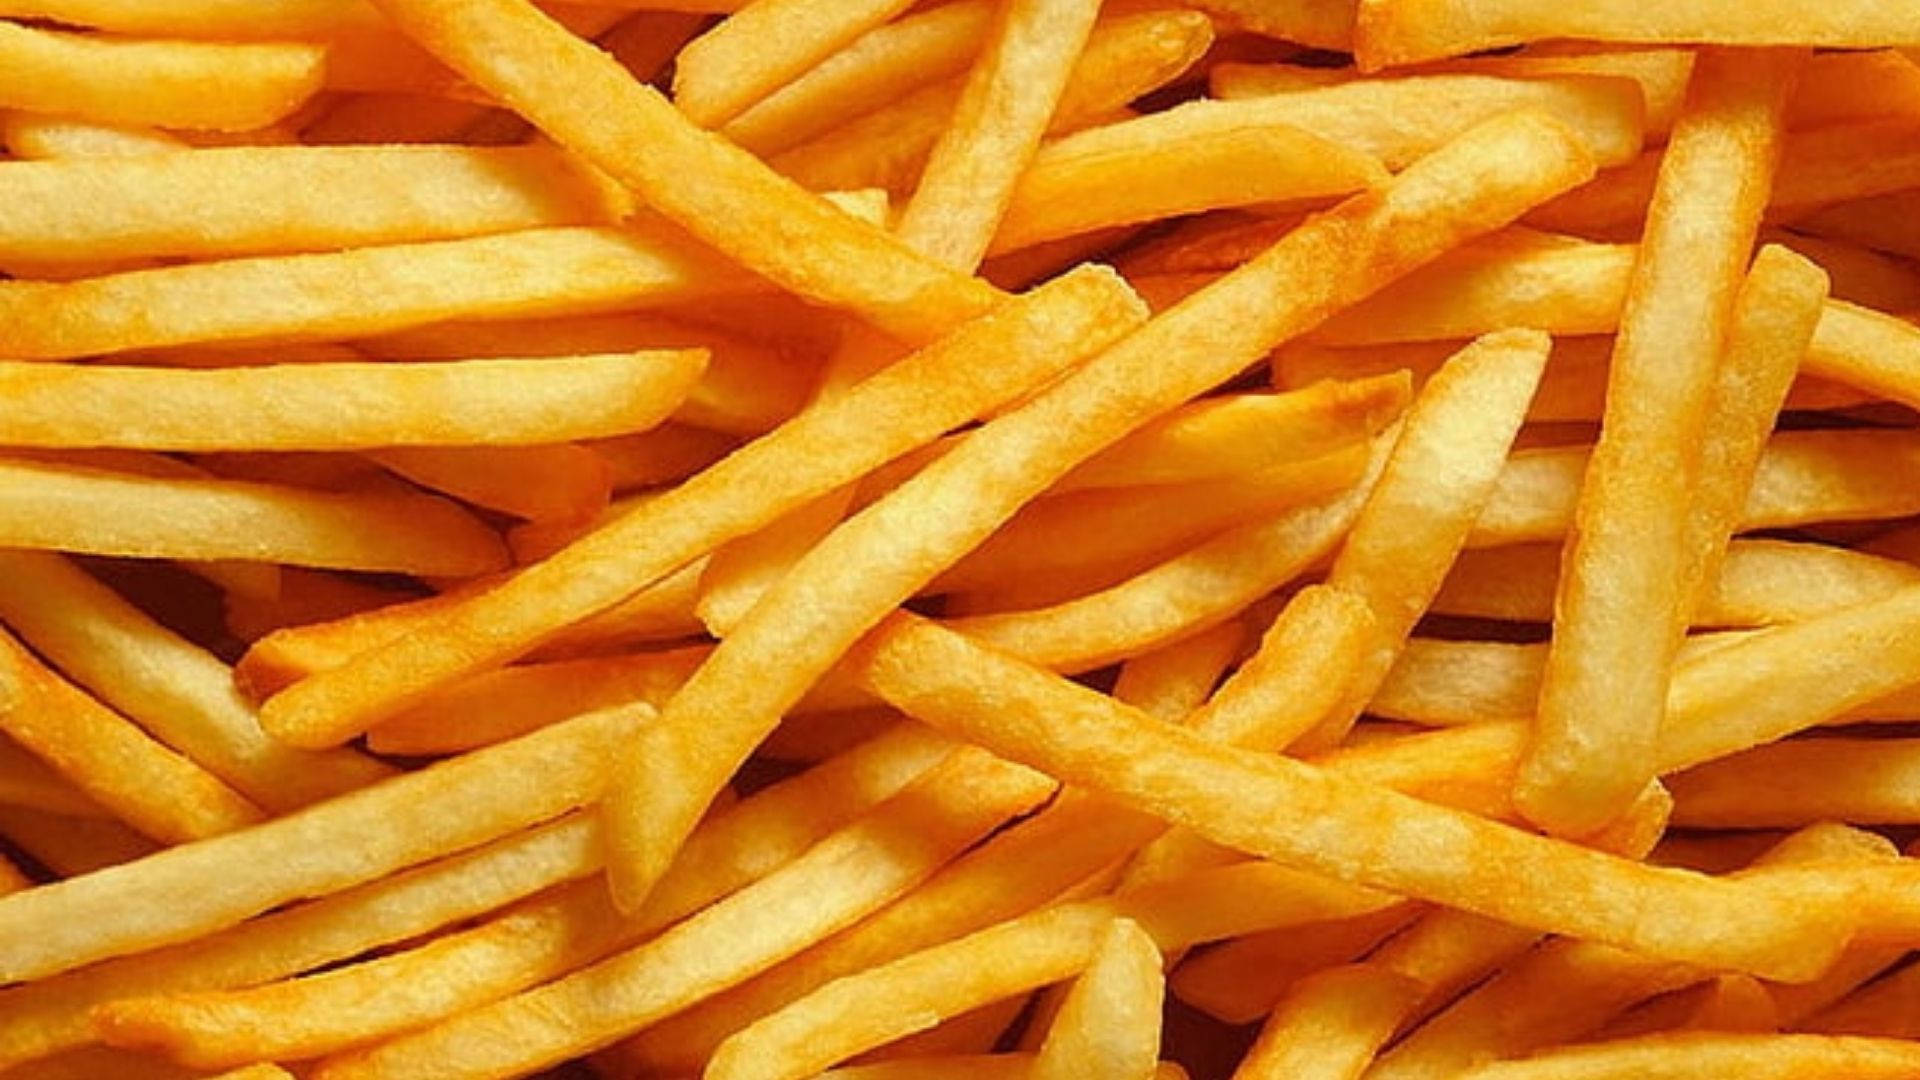 Crispy Golden French Fries